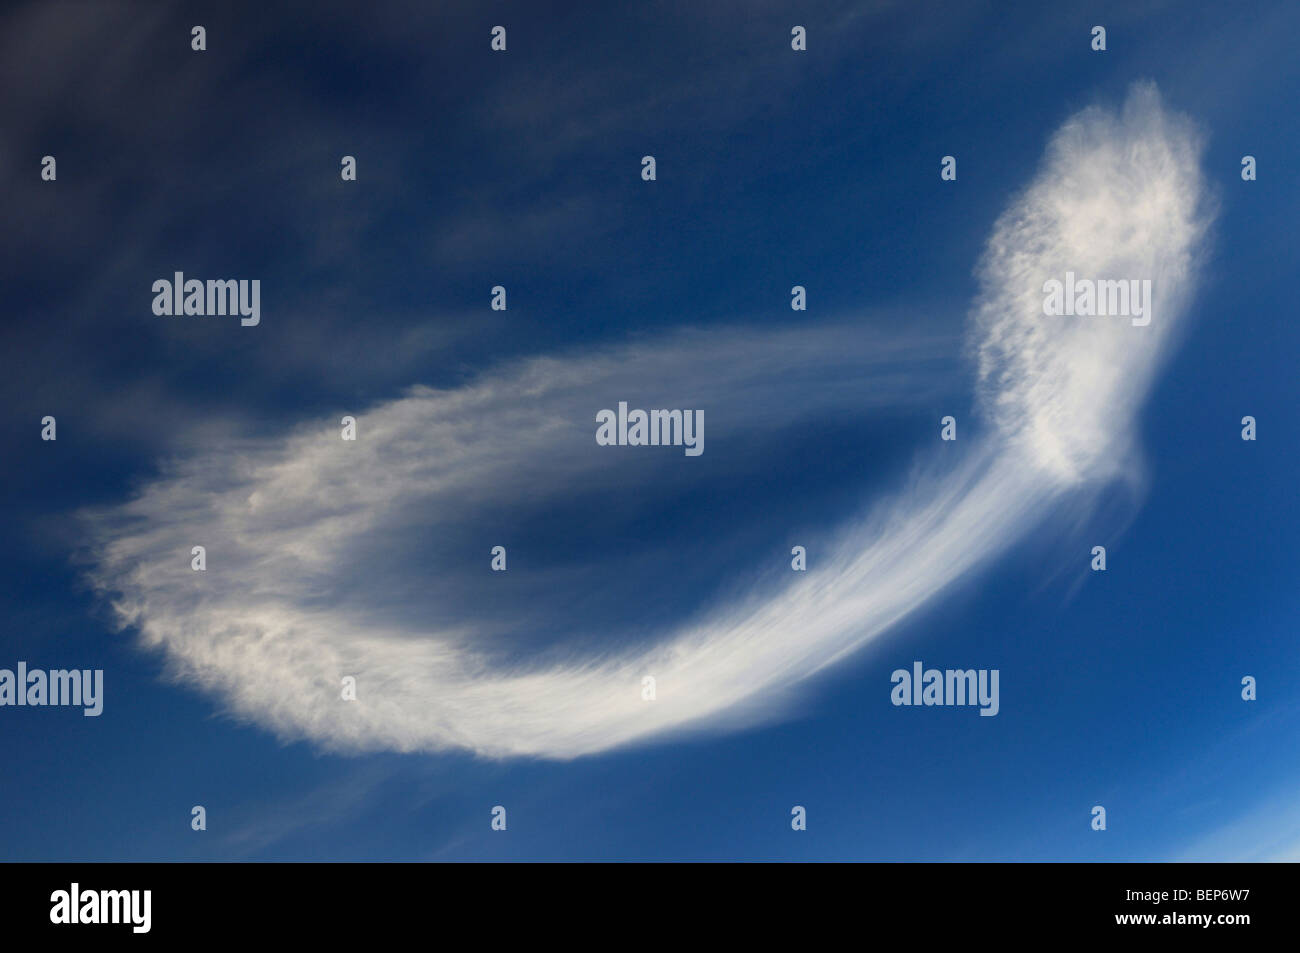 Barrido de un inusual la formación de nubes en el cielo azul parecido a un espermatozoide Foto de stock